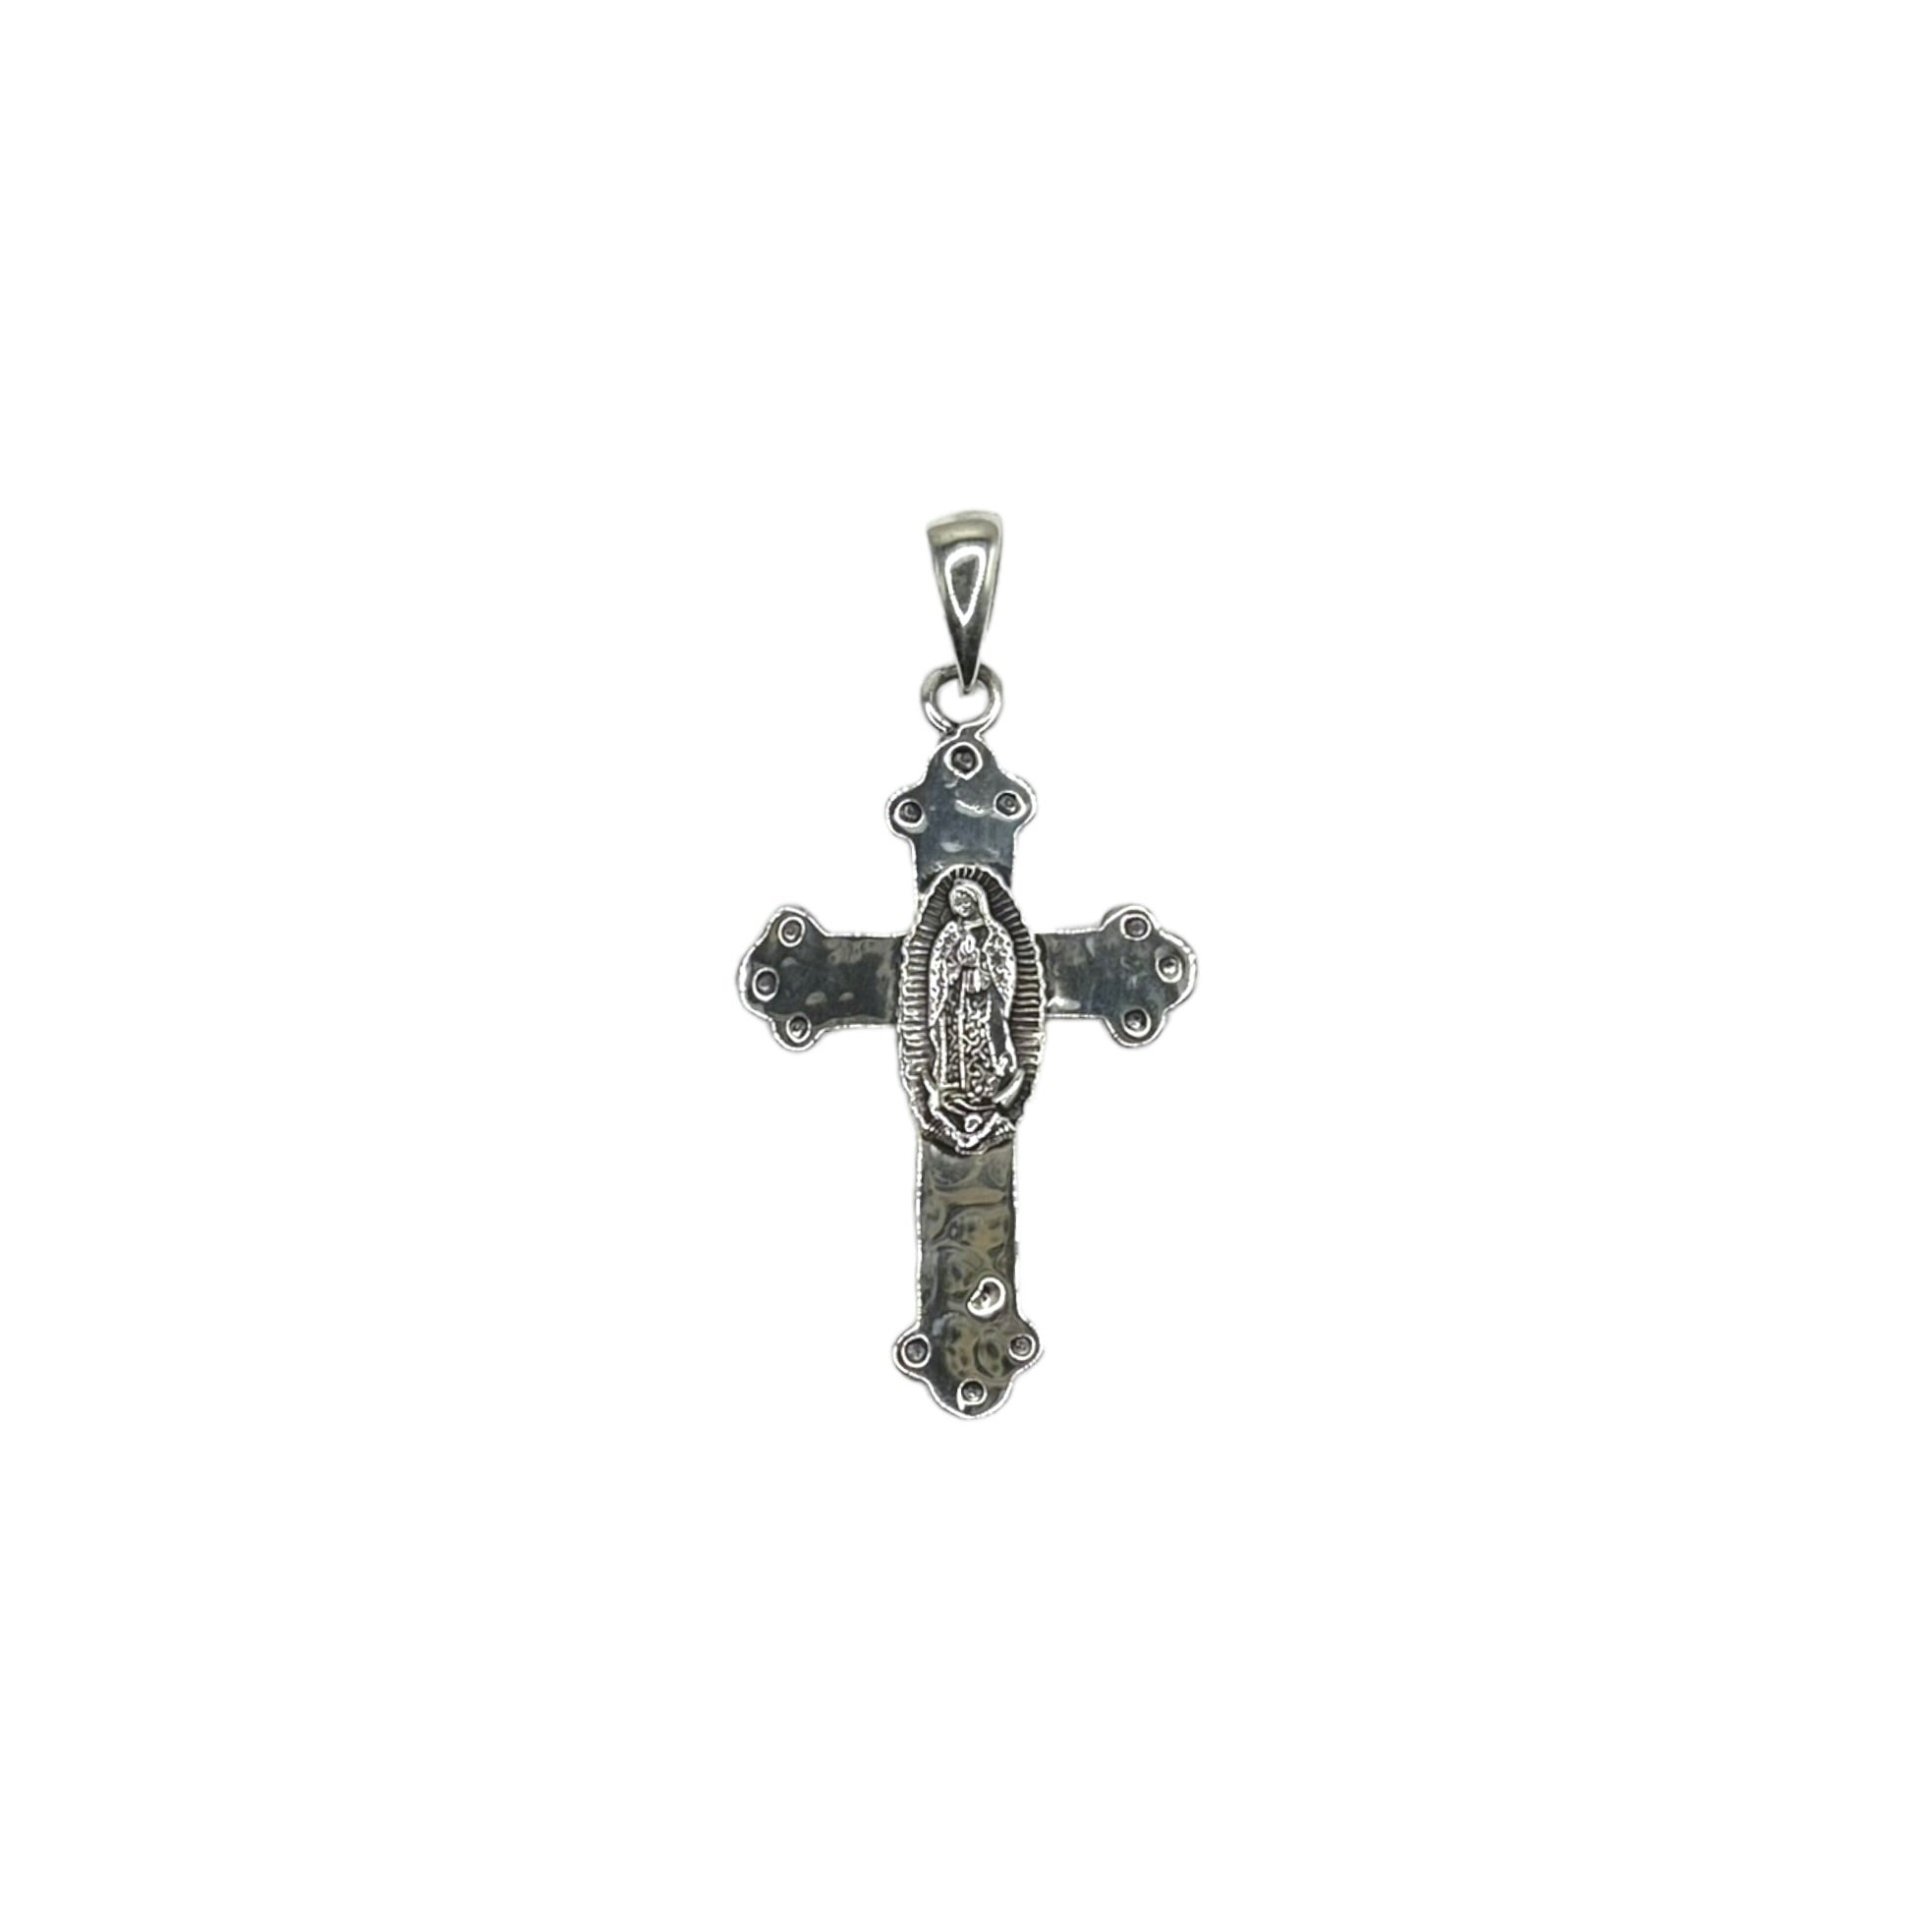 Ornate Cross Pendant – Super Silver